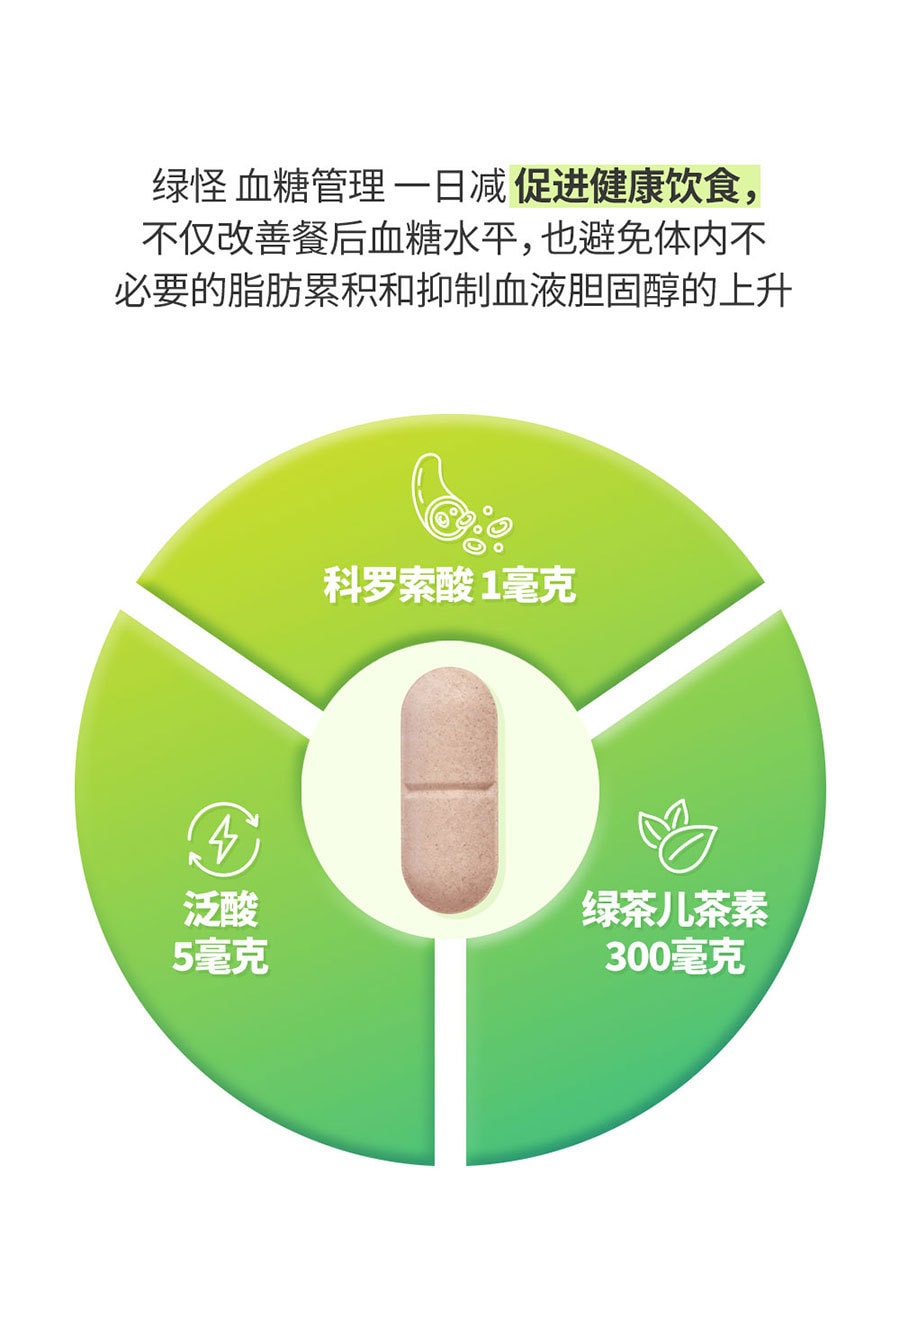 韓國 [Green Monster] 血糖管理一日減 健康補助食品 - 28粒